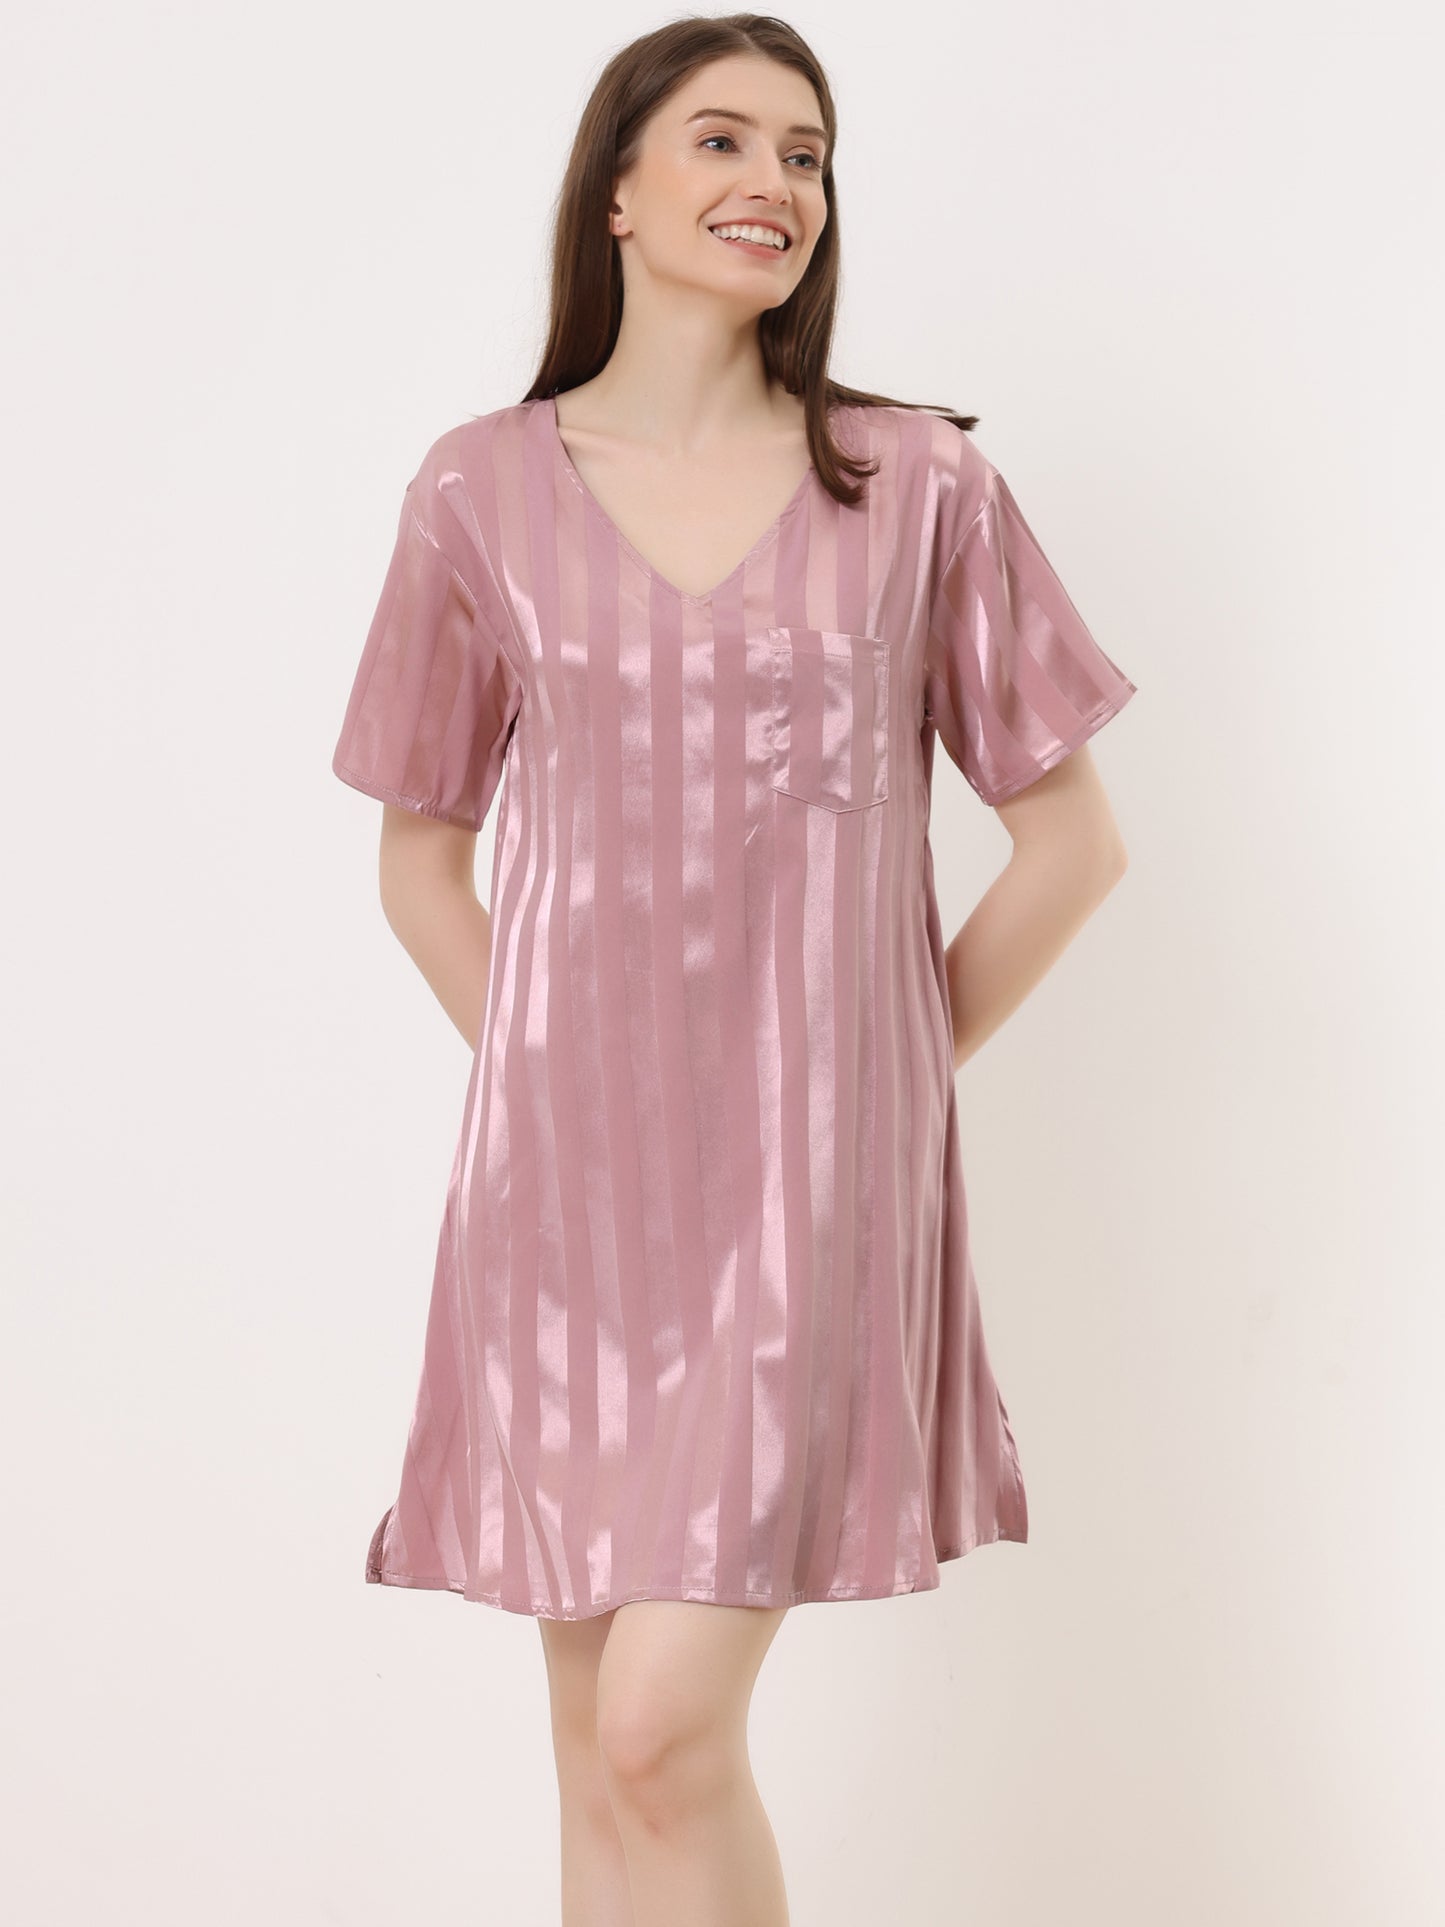 cheibear Pajamas Satin Dress Nightshirt Short Sleeves Lounge Sleepwear Nightgown Pink